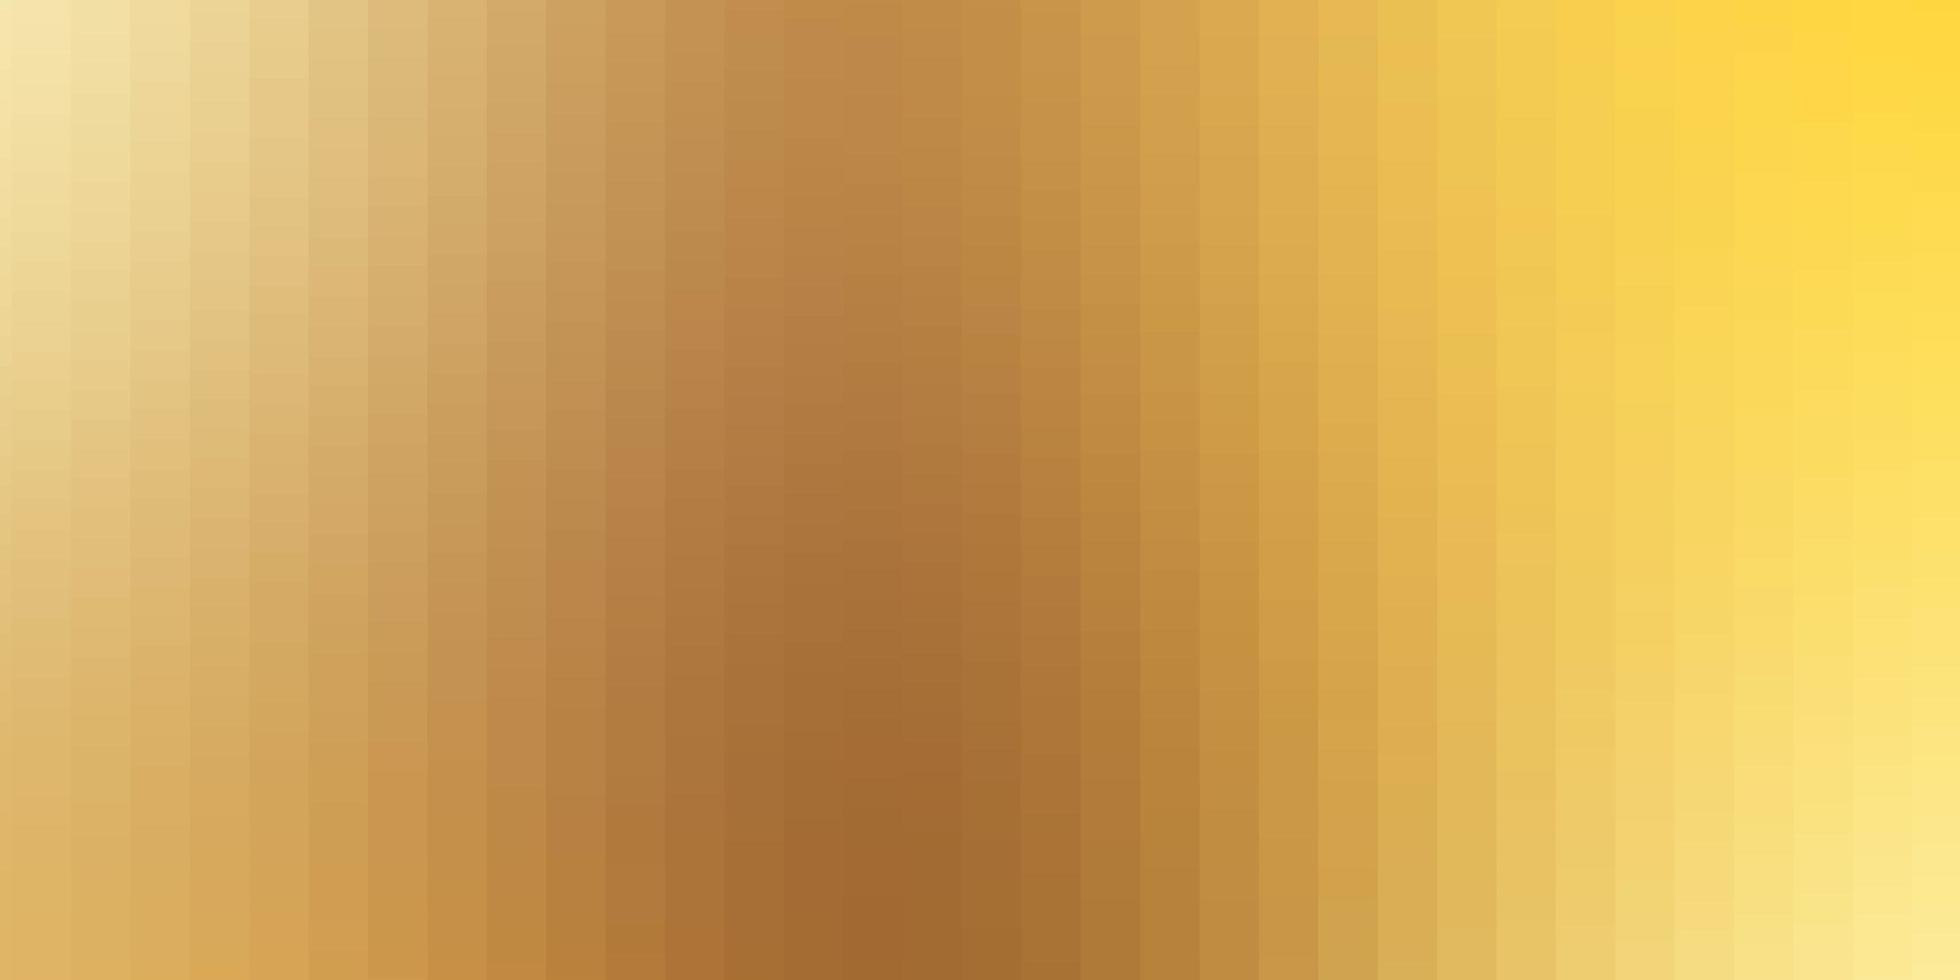 pano de fundo laranja claro com retângulos ilustração colorida com retângulos gradientes e modelo de quadrados para celulares vetor